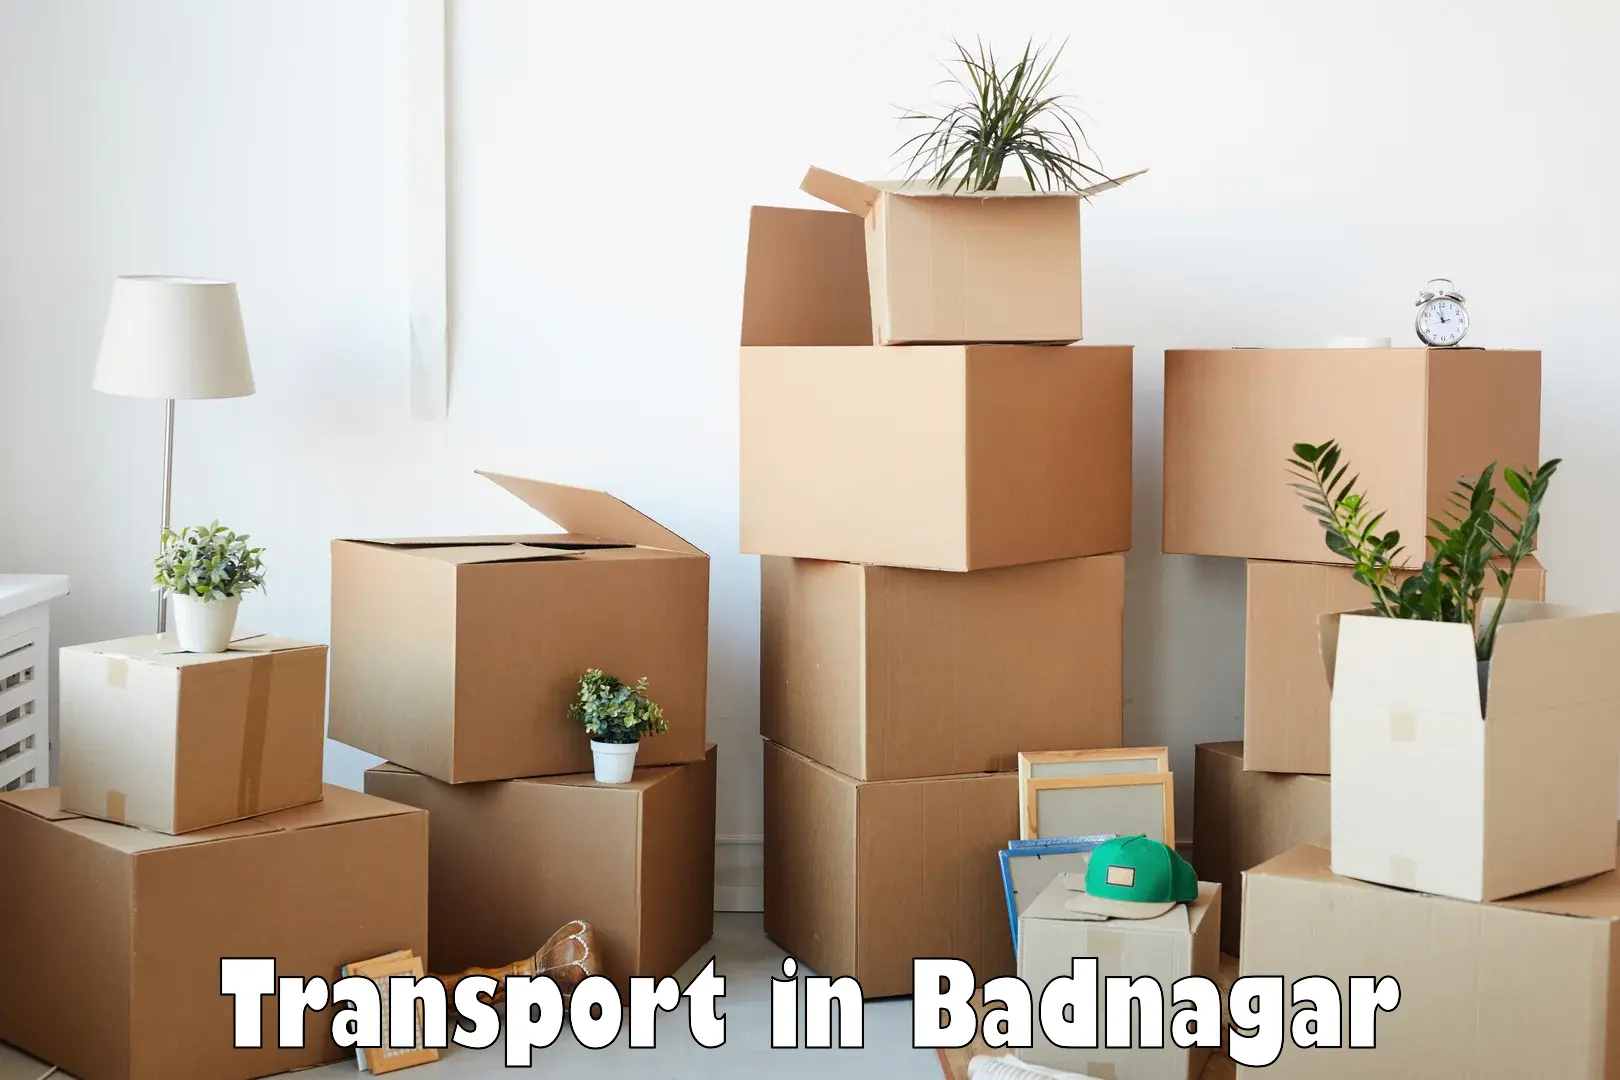 Commercial transport service in Badnagar